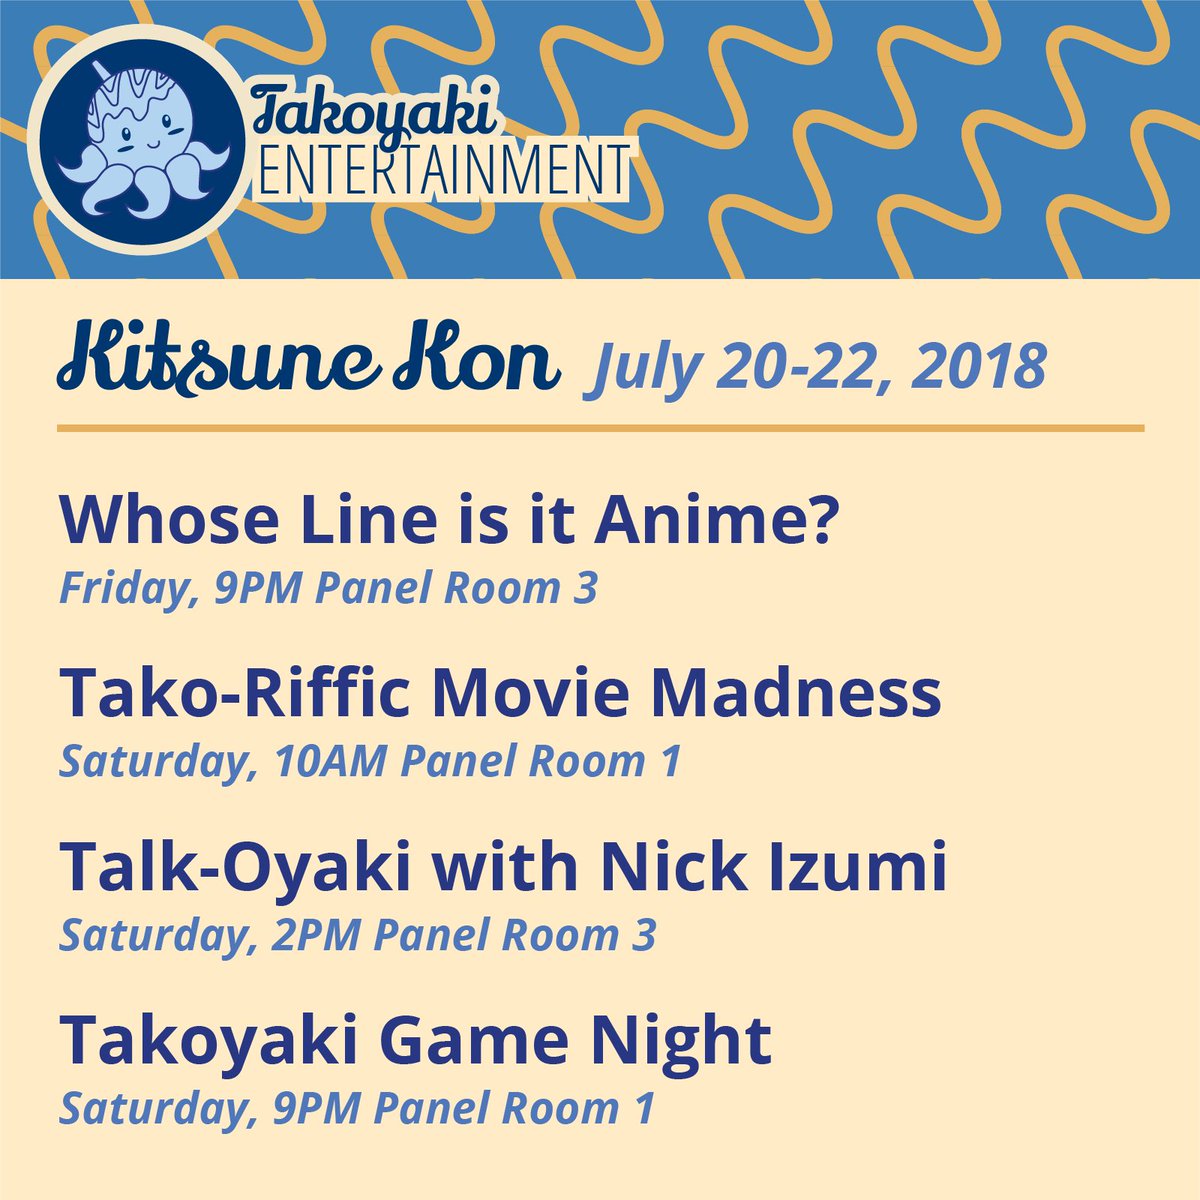 We will be doing some awesome panels at #kitsunekon2018! We hope to see you there 😆
.
.
.
#kitsune #kitsunekon #con #convention #geek #nerd #anime #animecon #entertainment #takoyakientertianment #improv #comedy #movieriff #takoriffic #talkoyaki